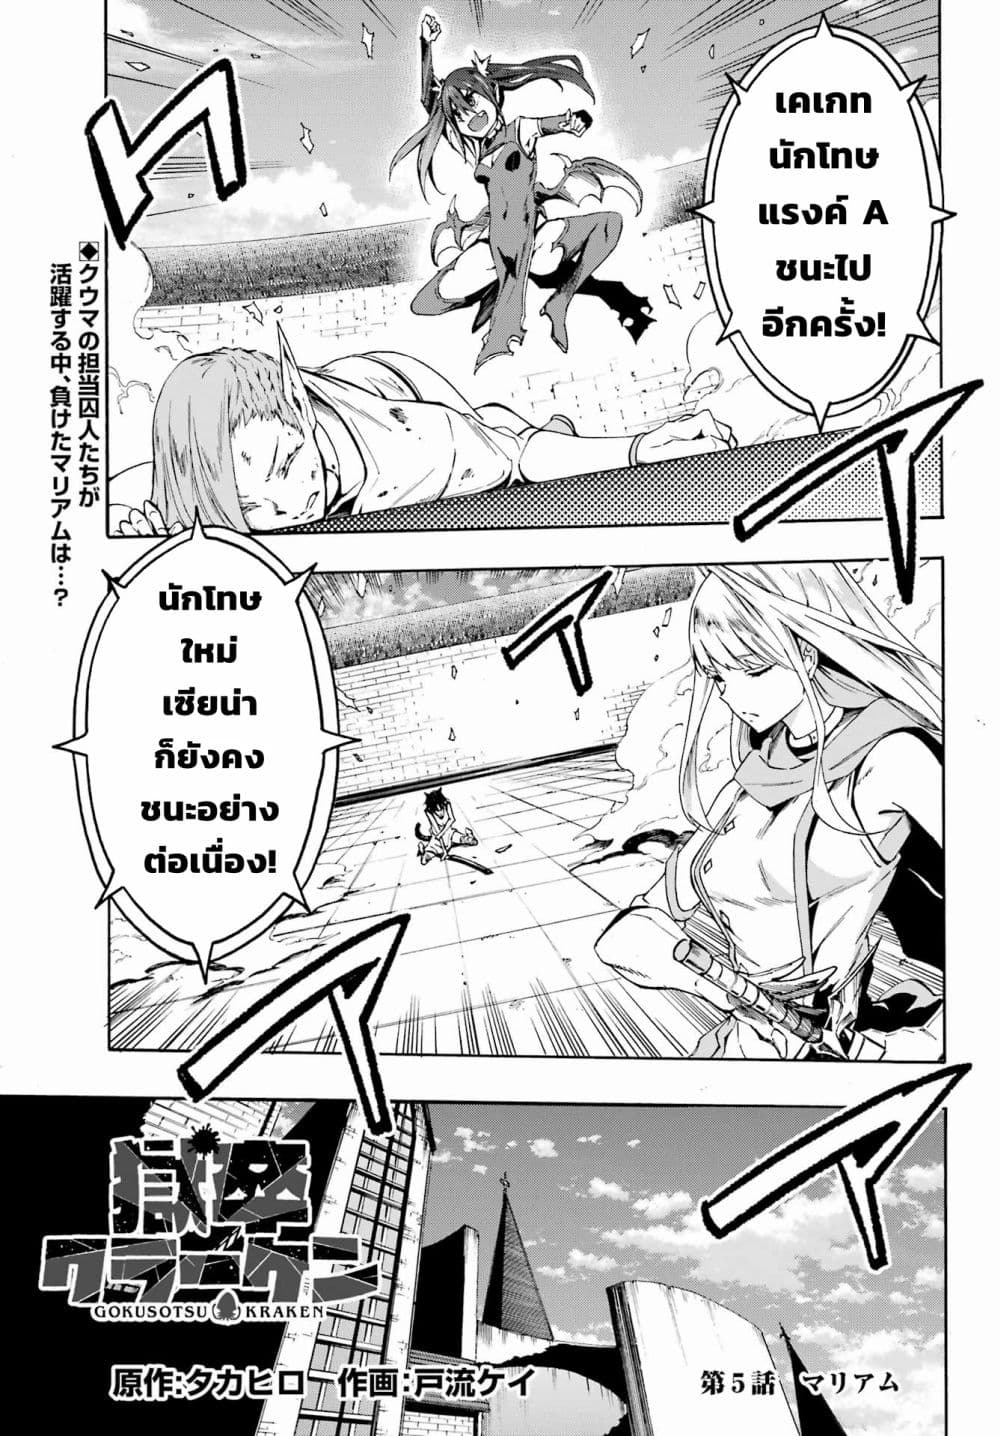 อ่านการ์ตูน Gokusotsu Kraken 5 ภาพที่ 1